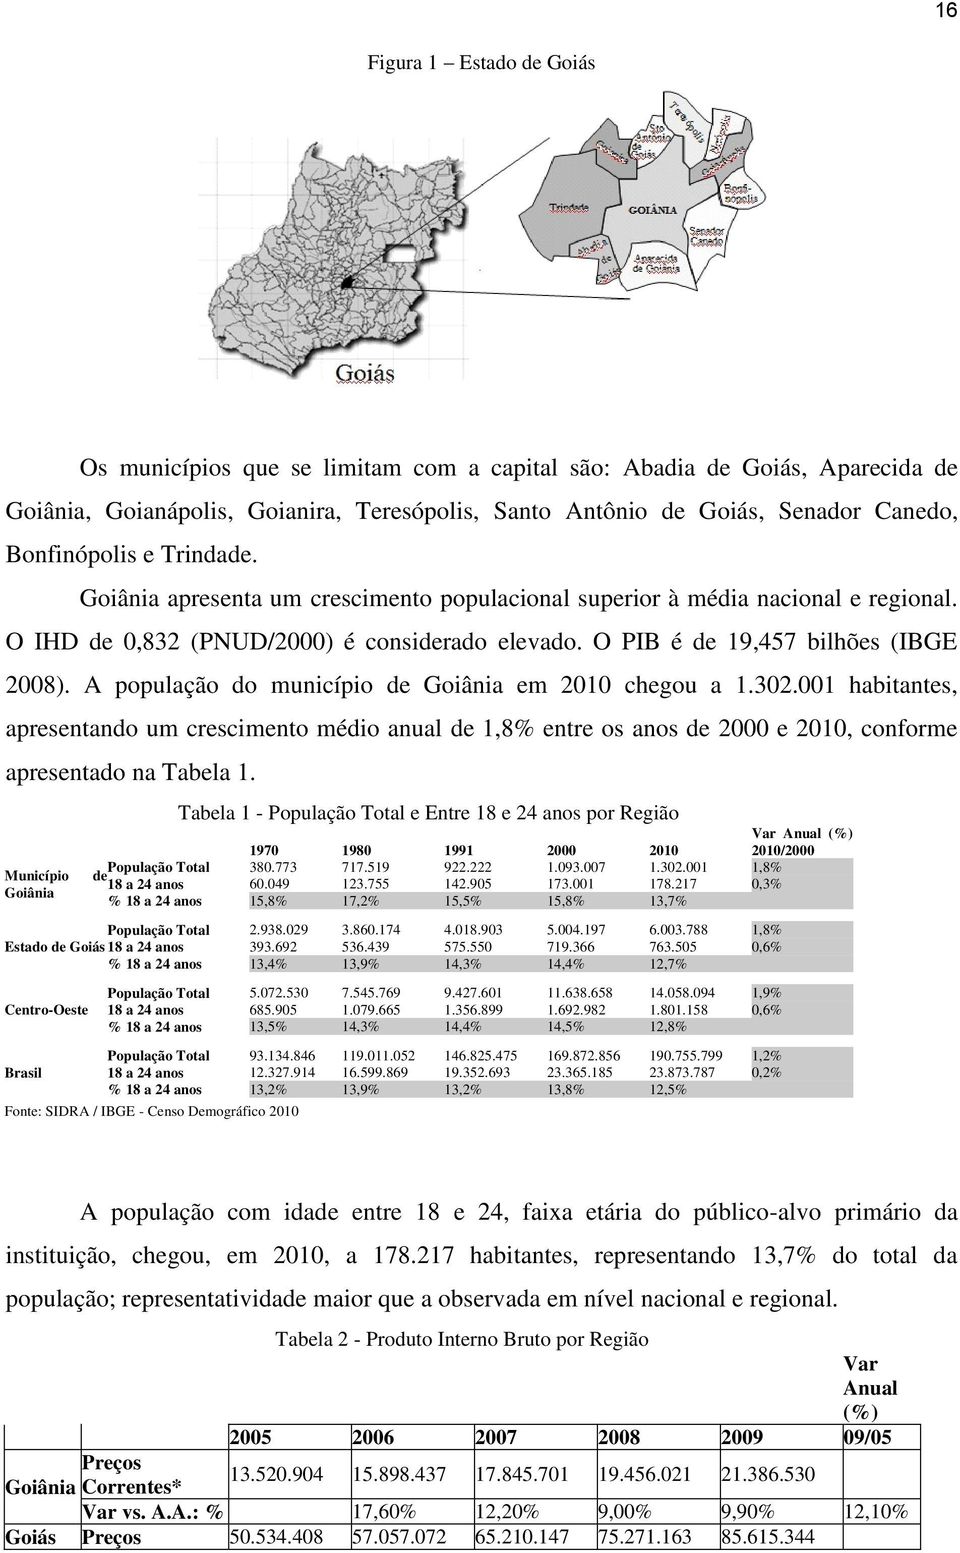 A população do município de Goiânia em 2010 chegou a 1.302.001 habitantes, apresentando um crescimento médio anual de 1,8% entre os anos de 2000 e 2010, conforme apresentado na Tabela 1.